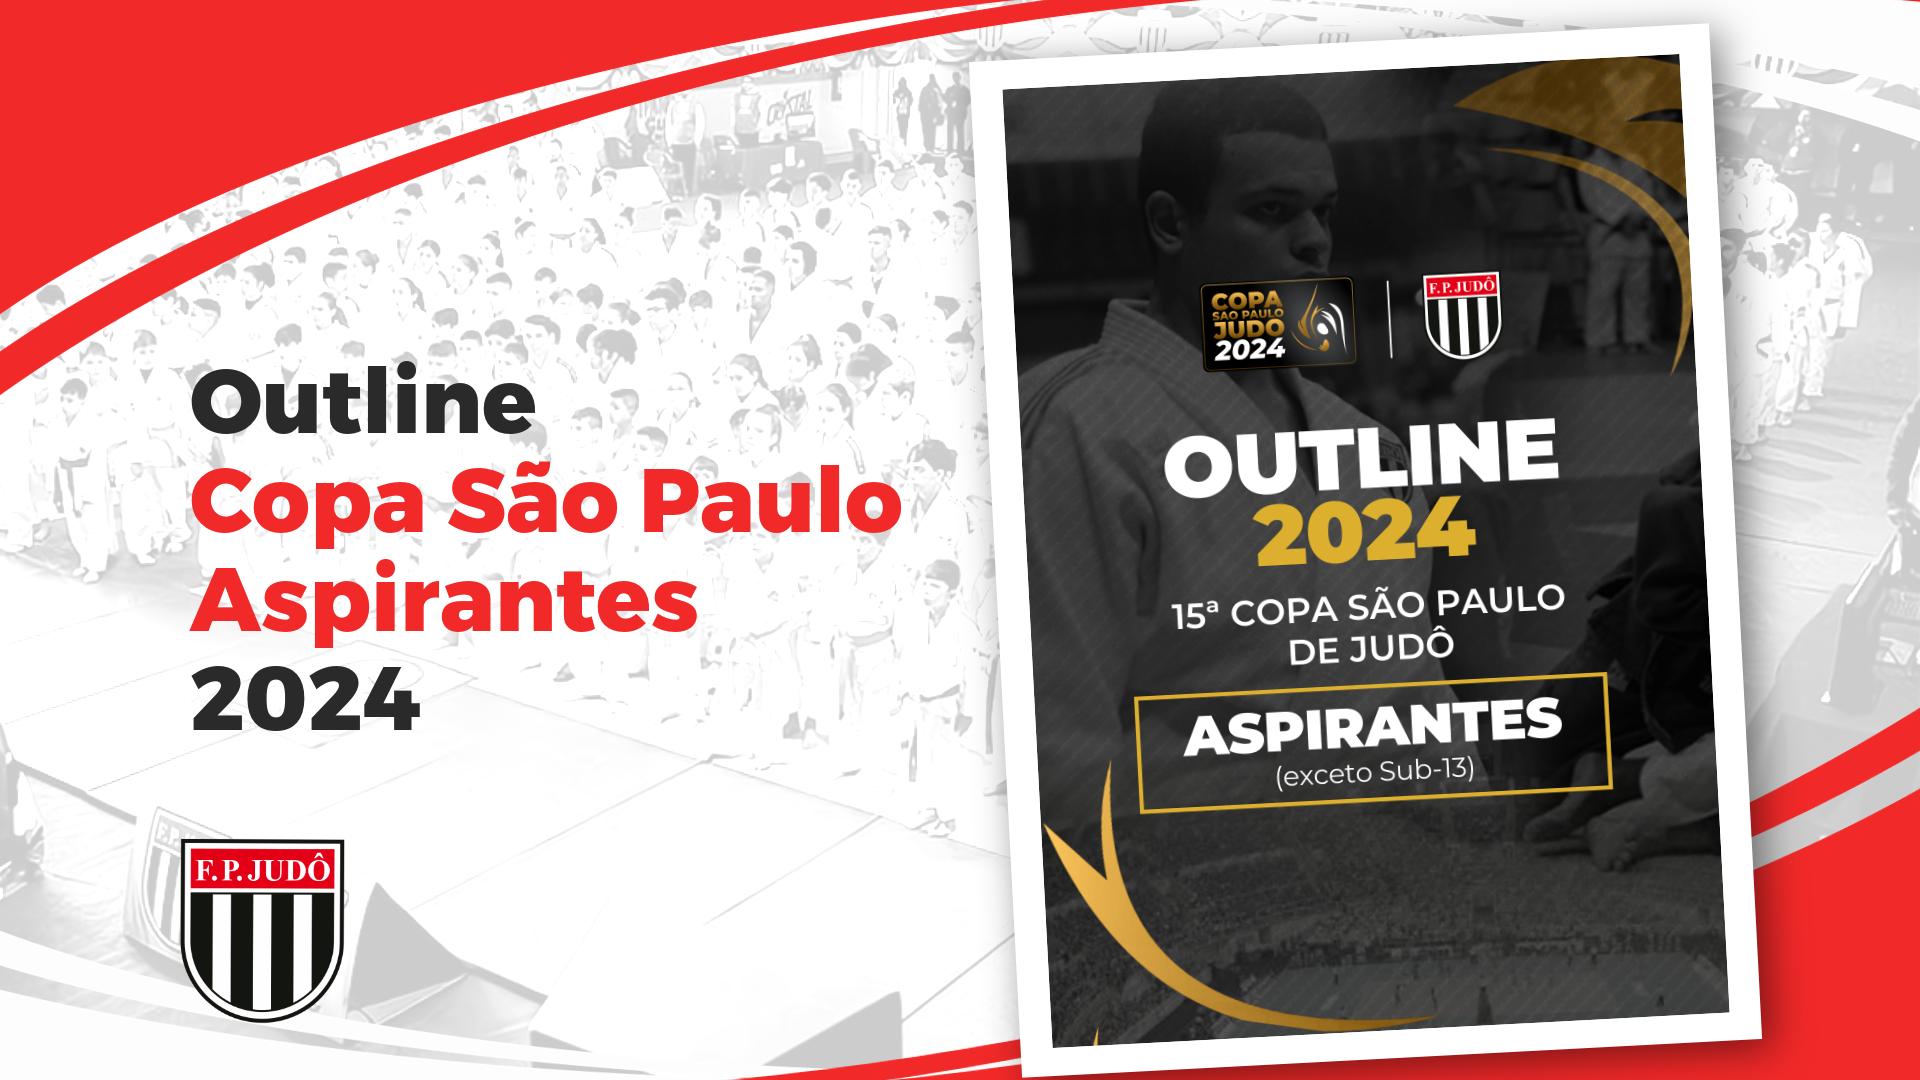 Outline Copa São Paulo 2024 - Aspirantes